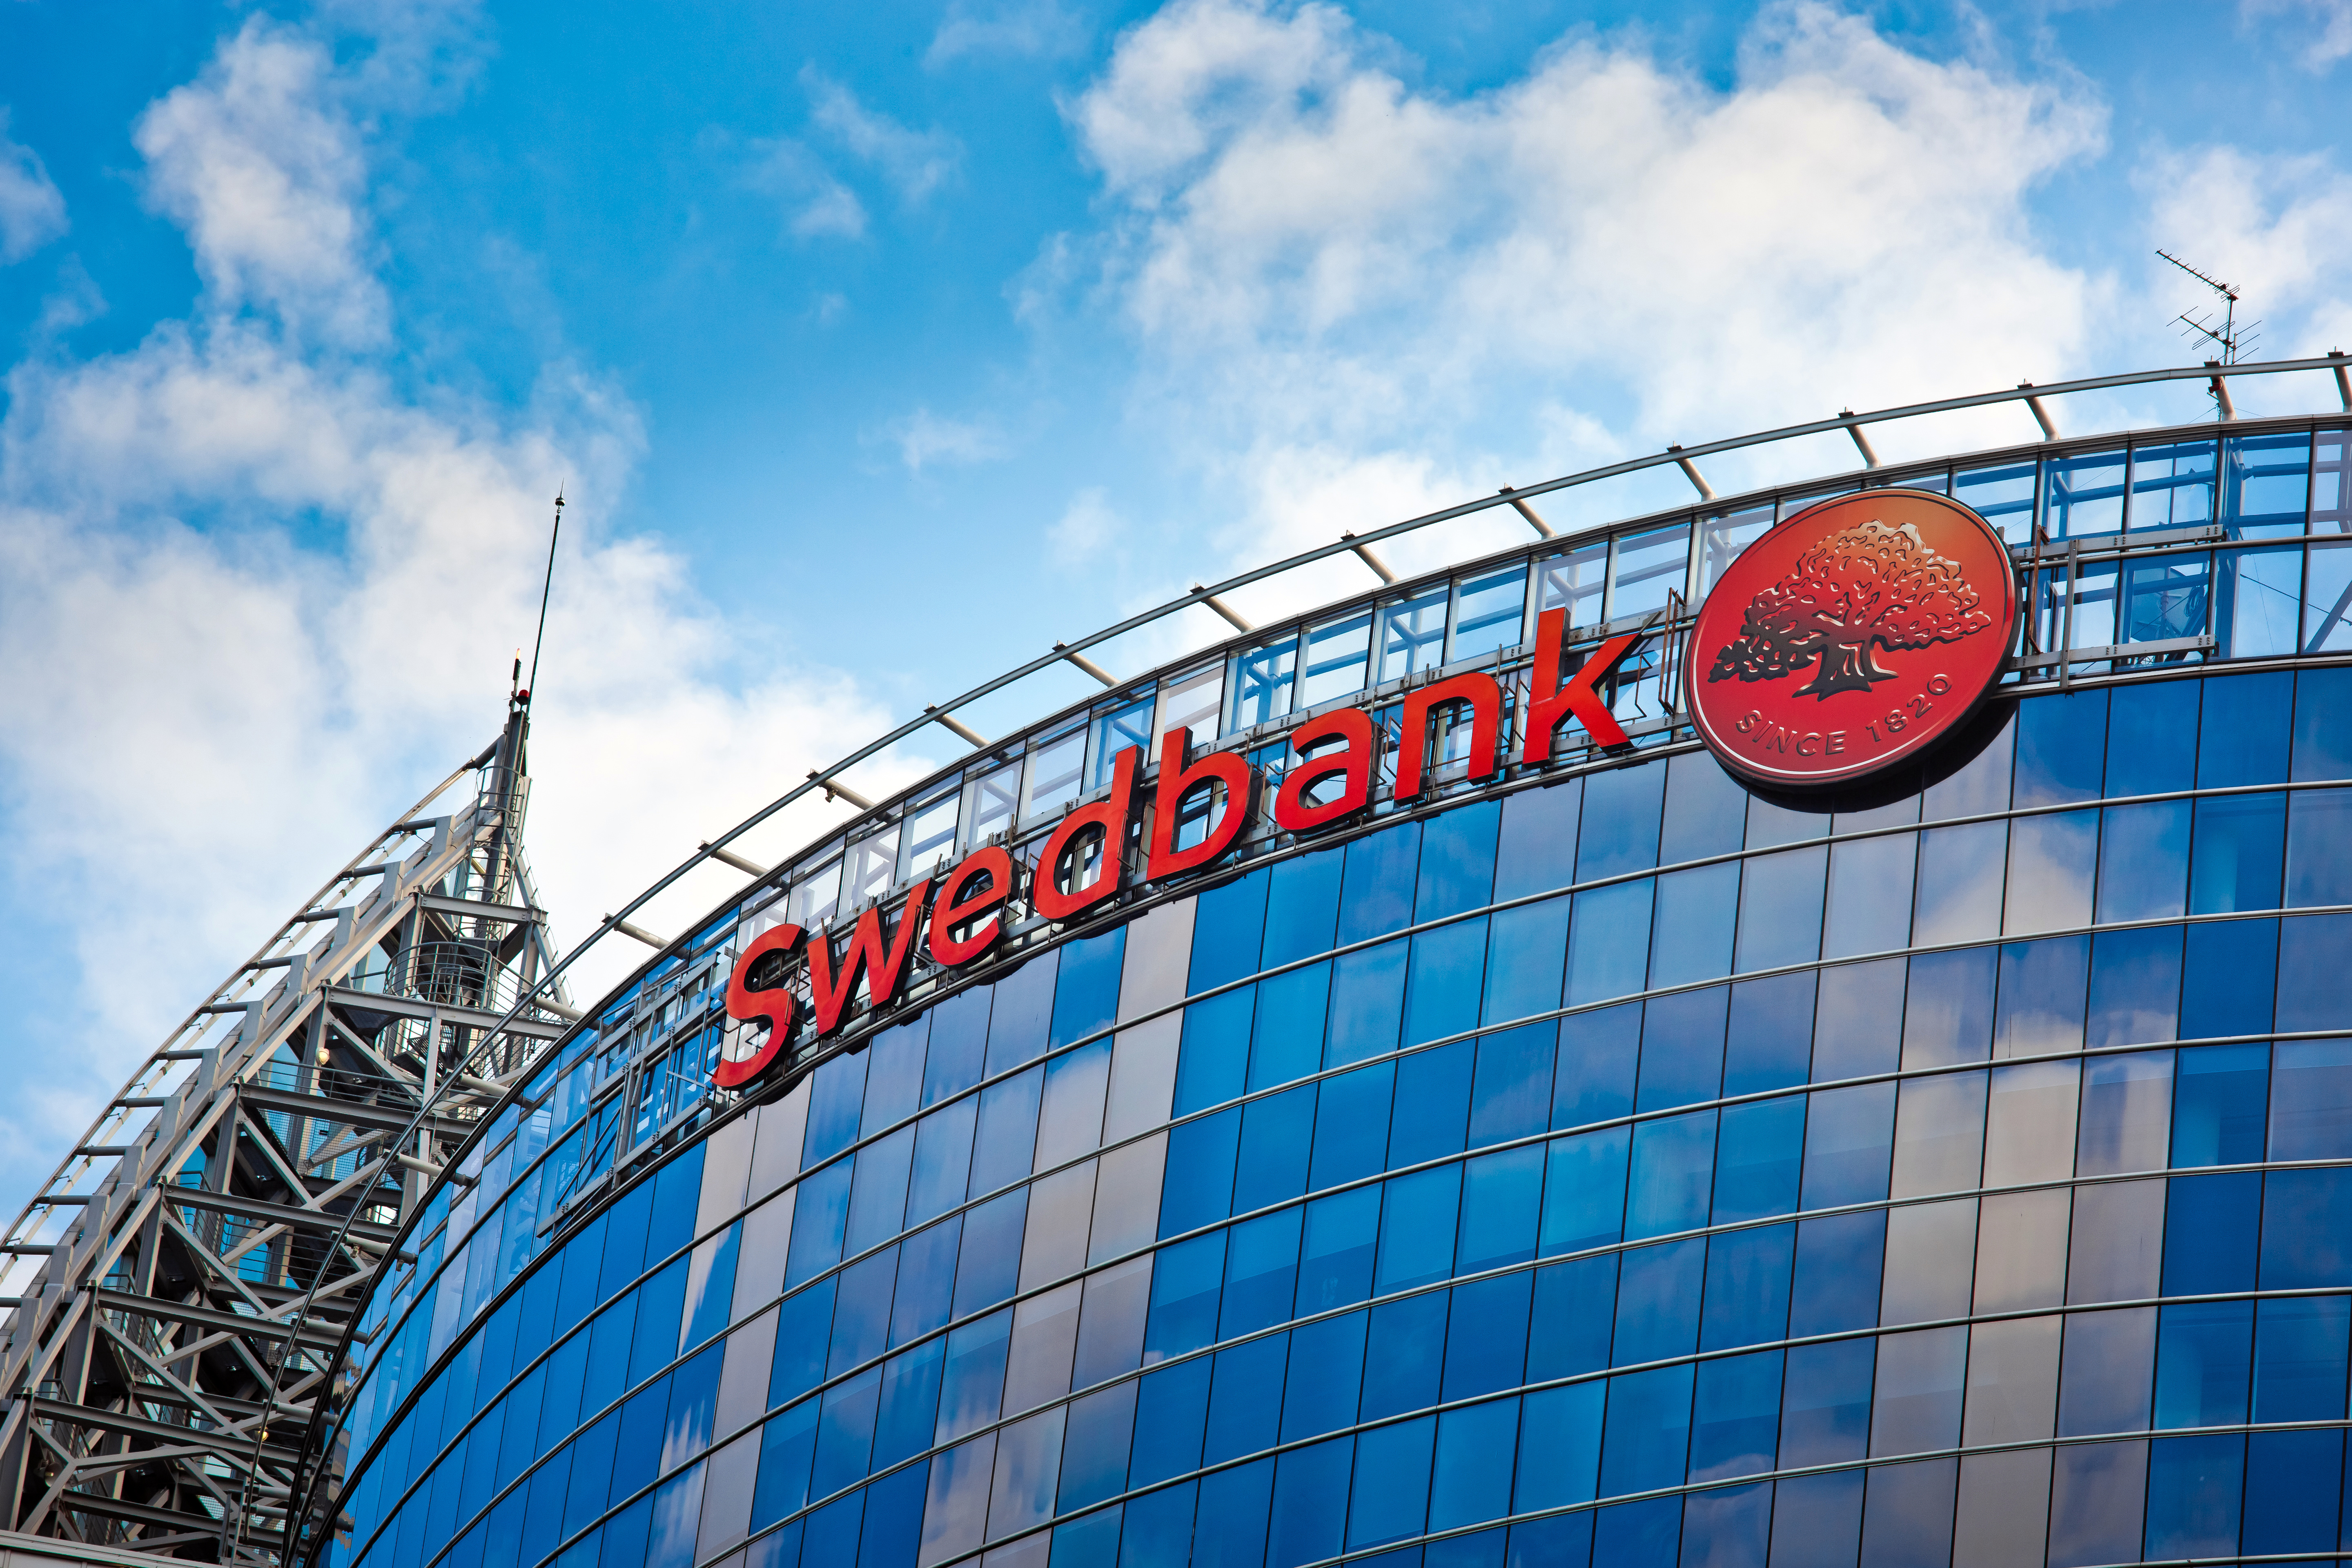 Şeful gigantului bancar Swebank a demisionat în urma unui scandal de spălare de bani